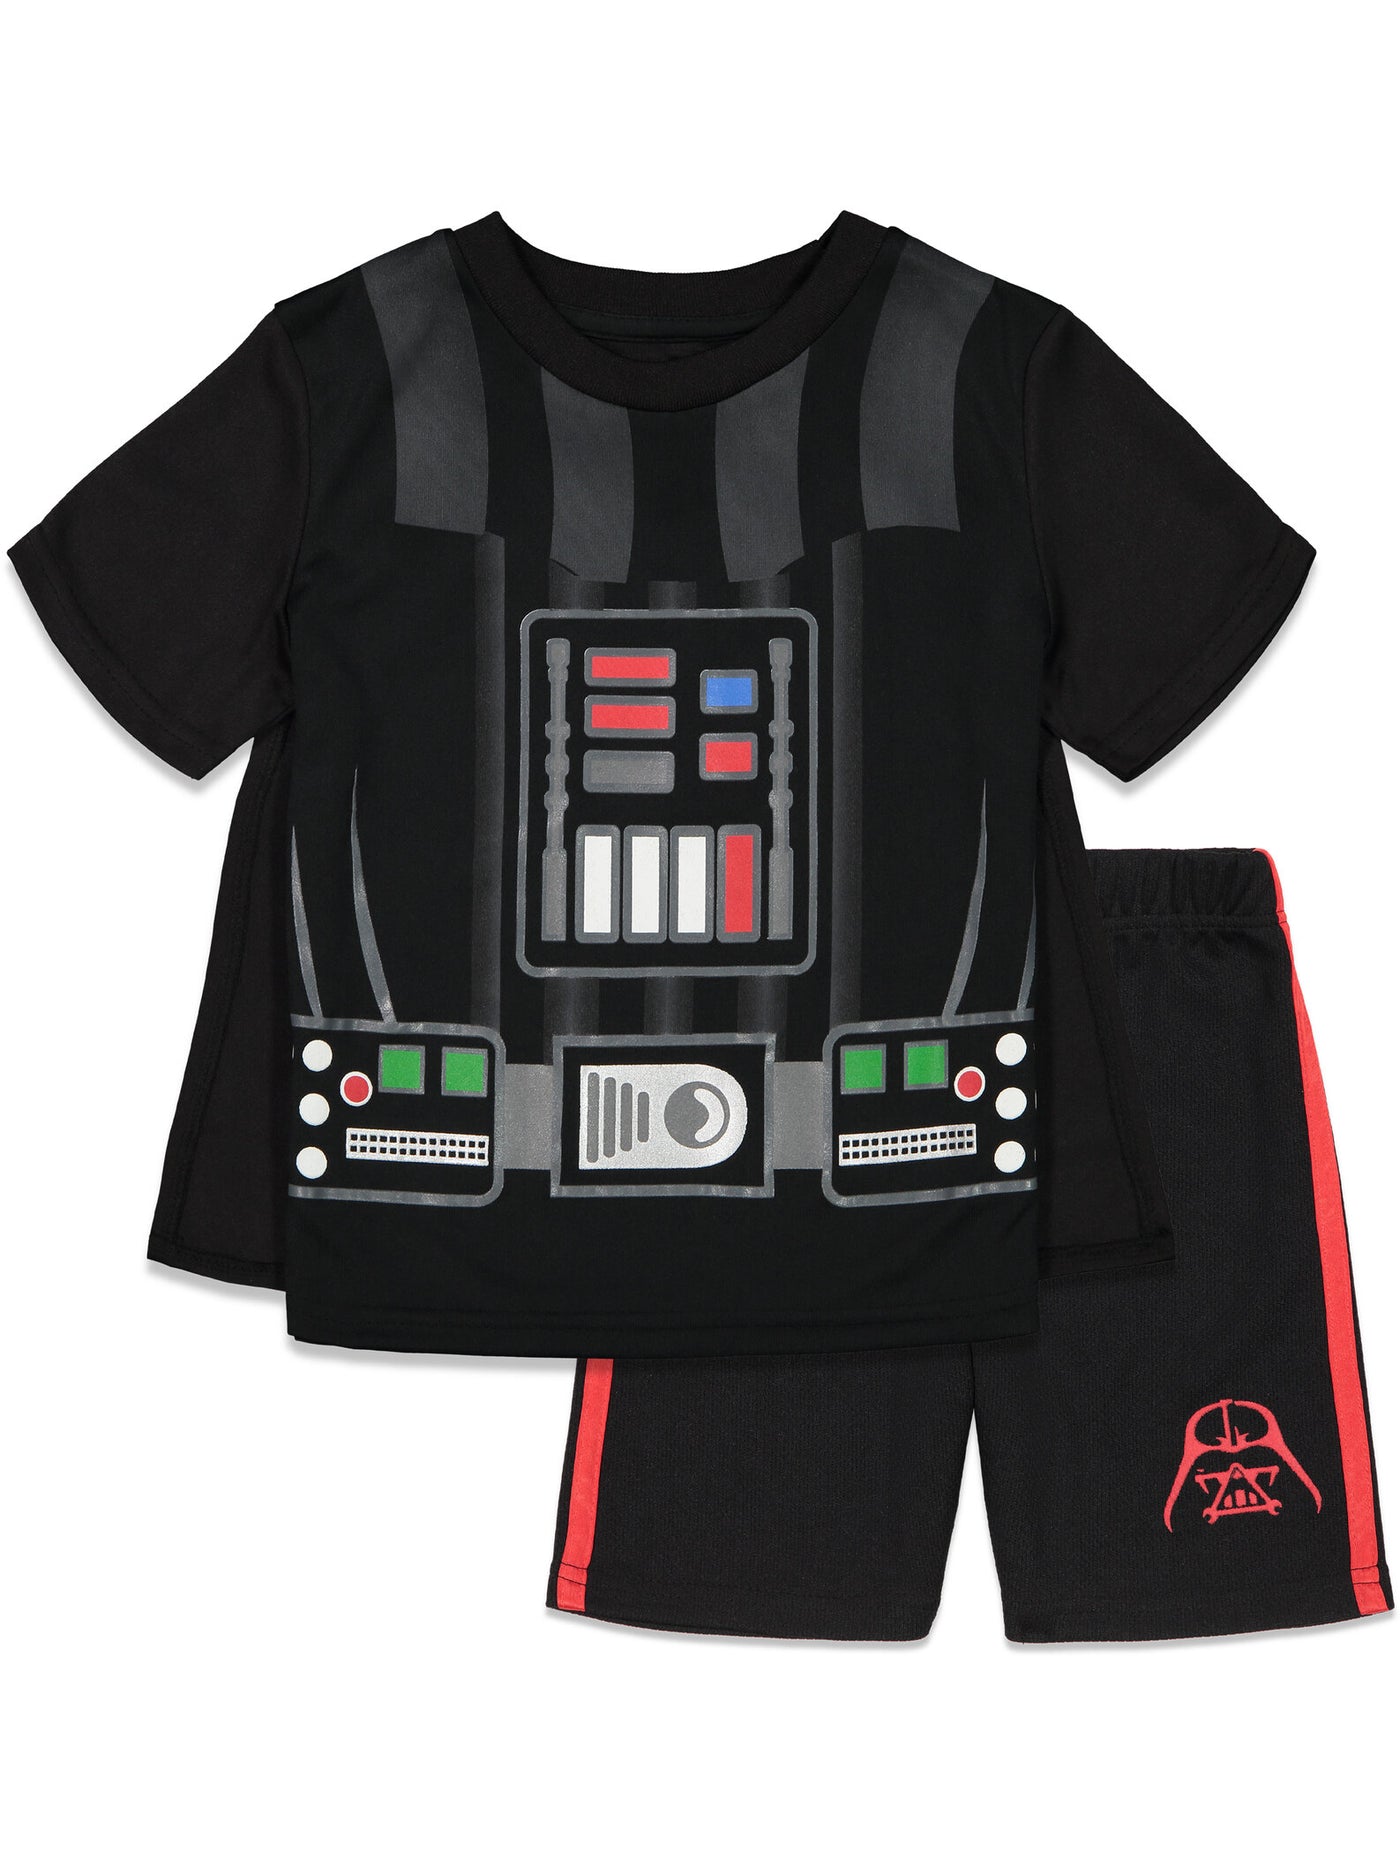 Conjunto de camiseta y pantalones cortos con capa de Darth Vader de Star Wars